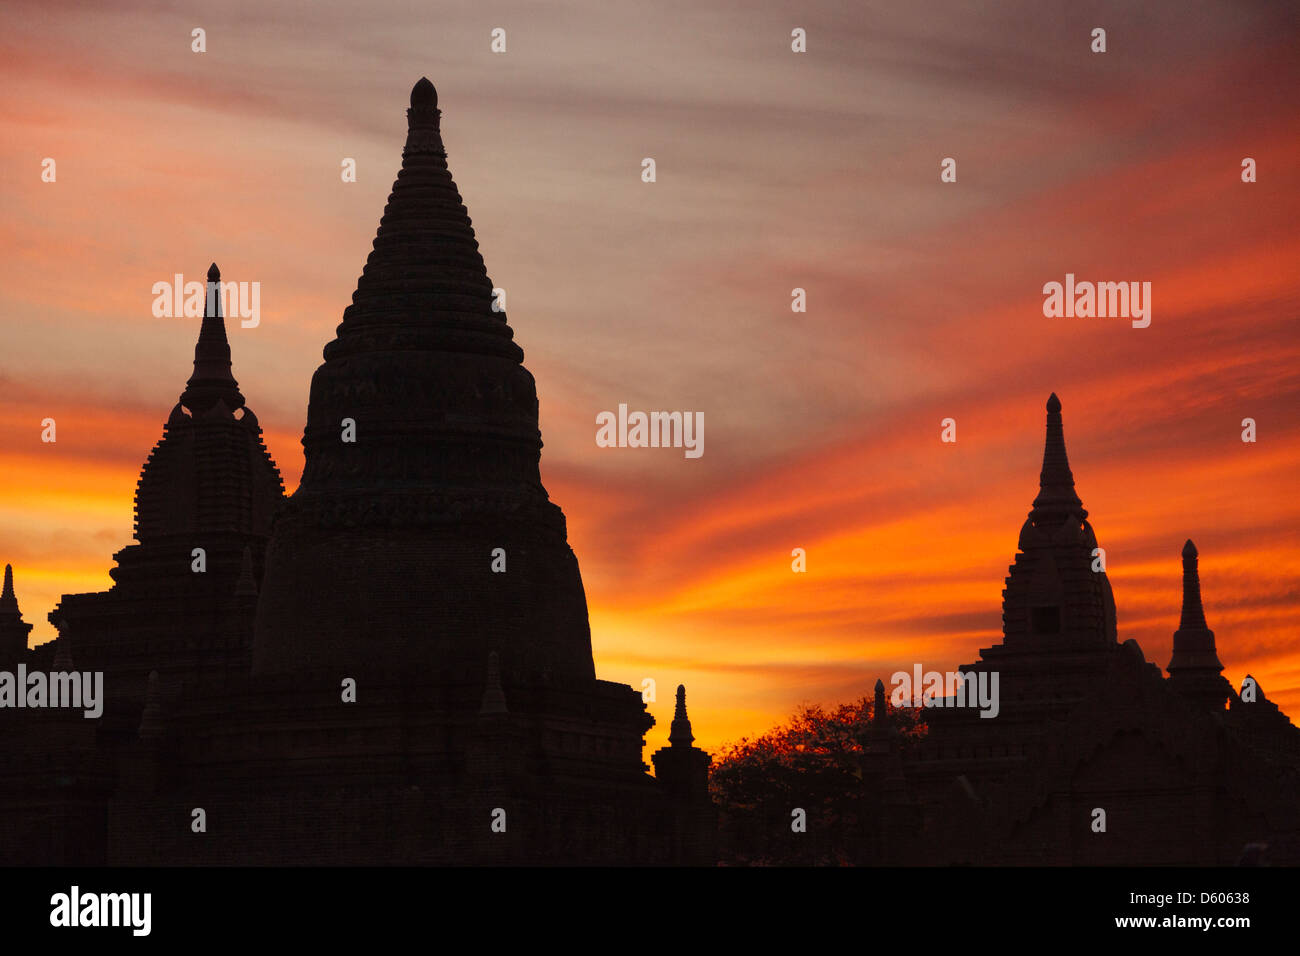 Die Stupas und Pagoden von Bagan, Myanmar, Silhouette nach Sonnenuntergang 6 Stockfoto